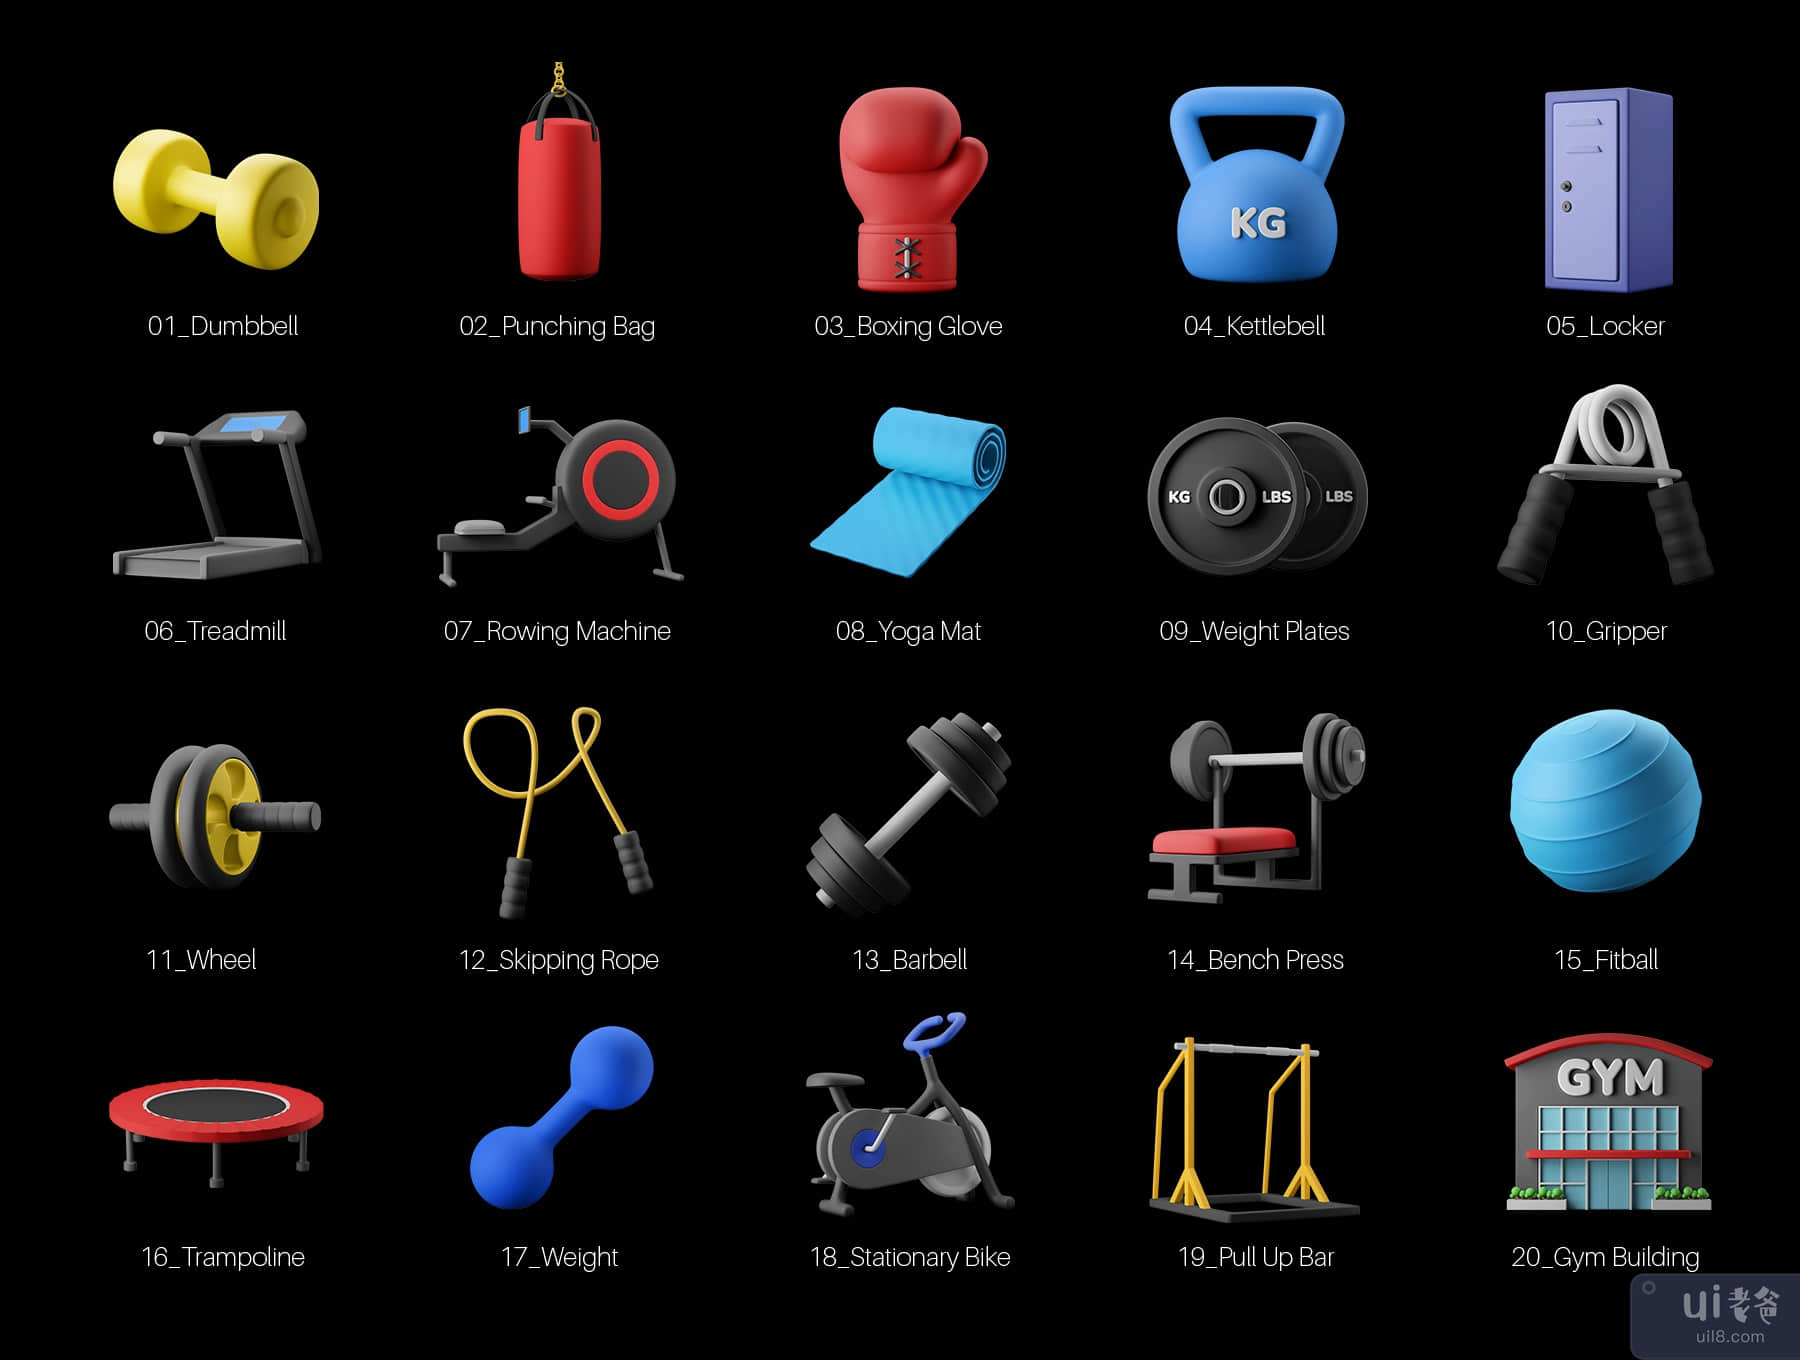 健身房设备 3D 图标包 (Fitness Gym Equipment 3D Icon Pack)插图6